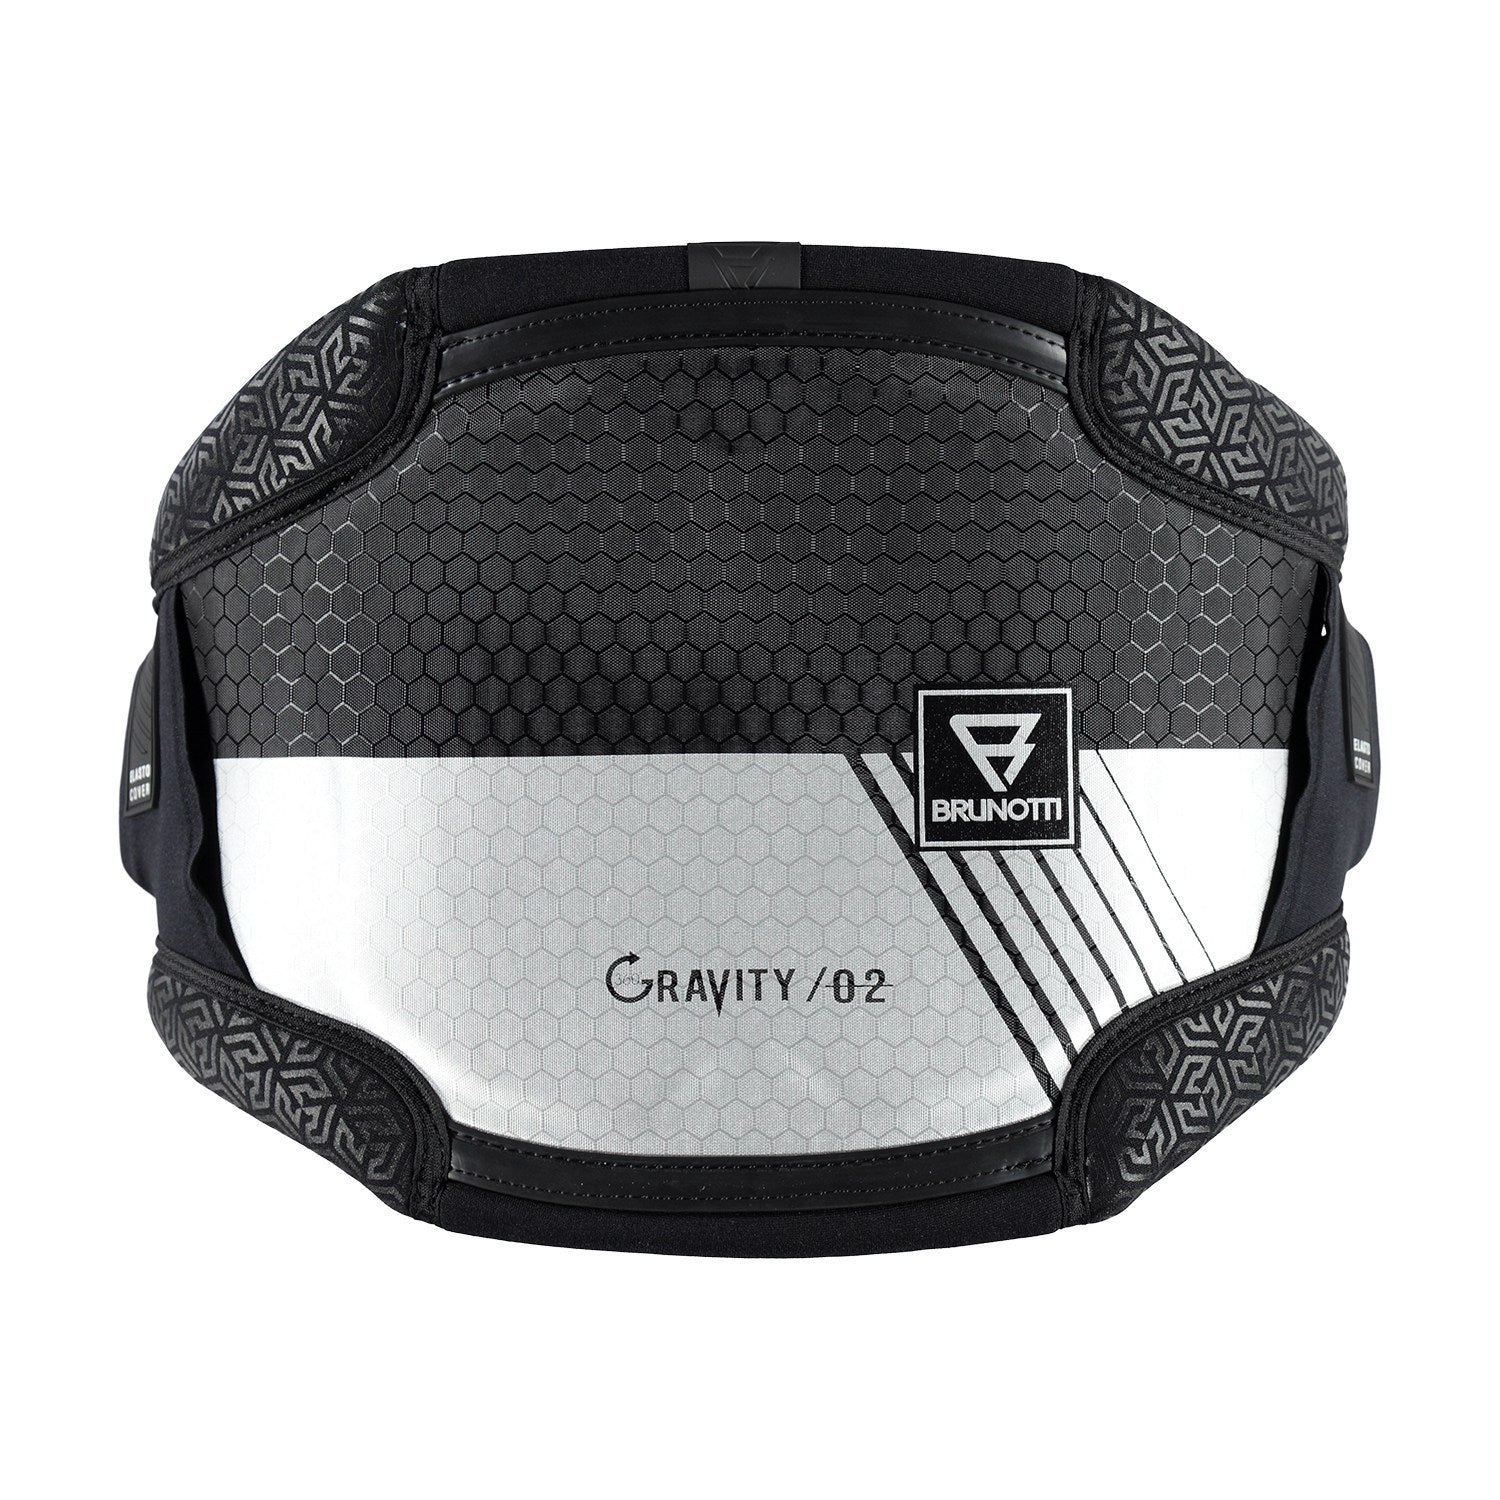 2019 Brunotti Gravity 02 Multi-Use Waist Harness Silver